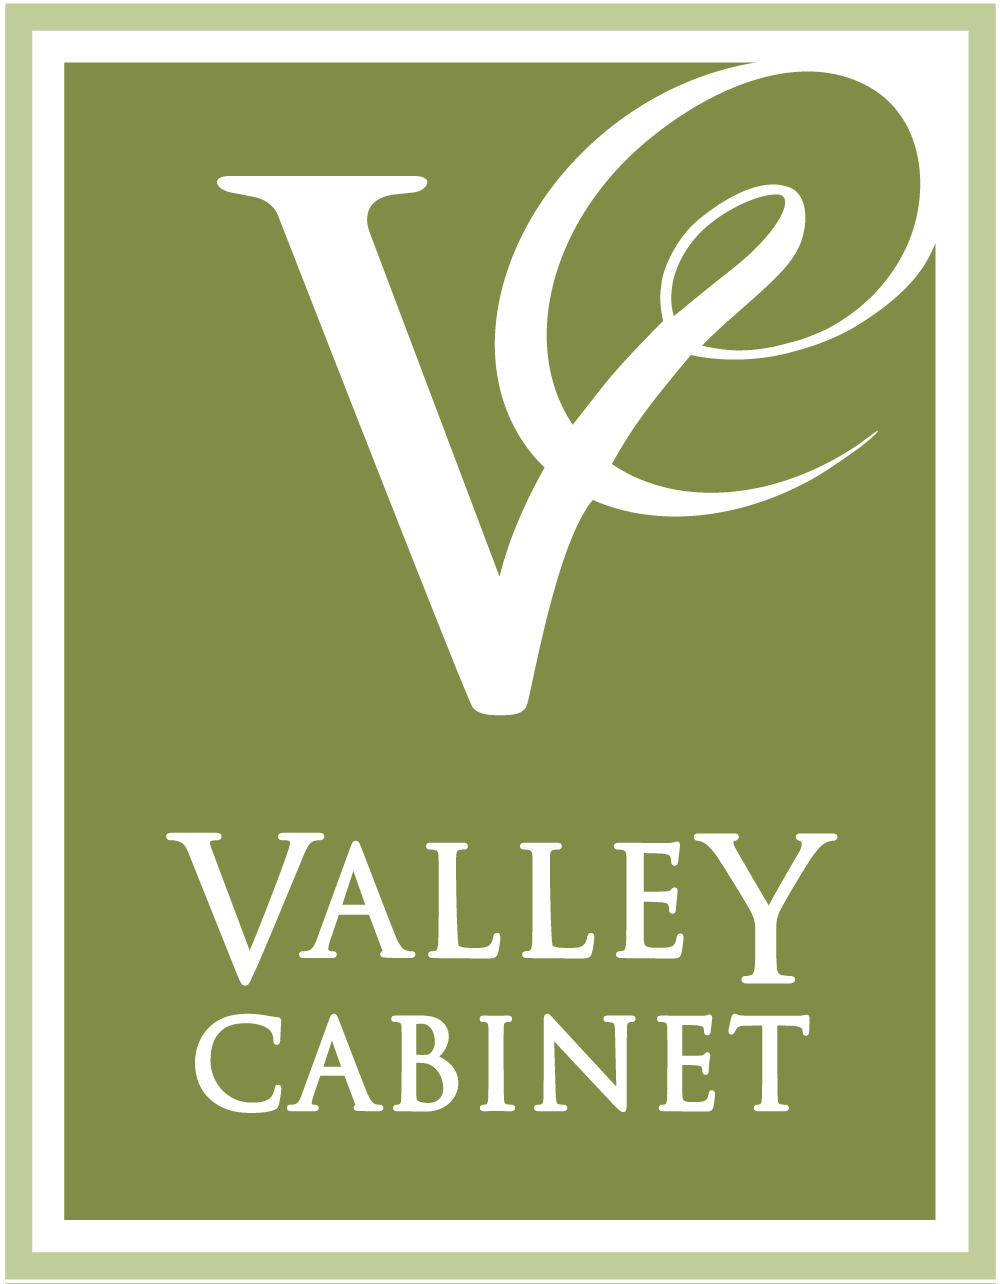 Interior Design Ideas Kitchen Cabinets By Valley Cabinet